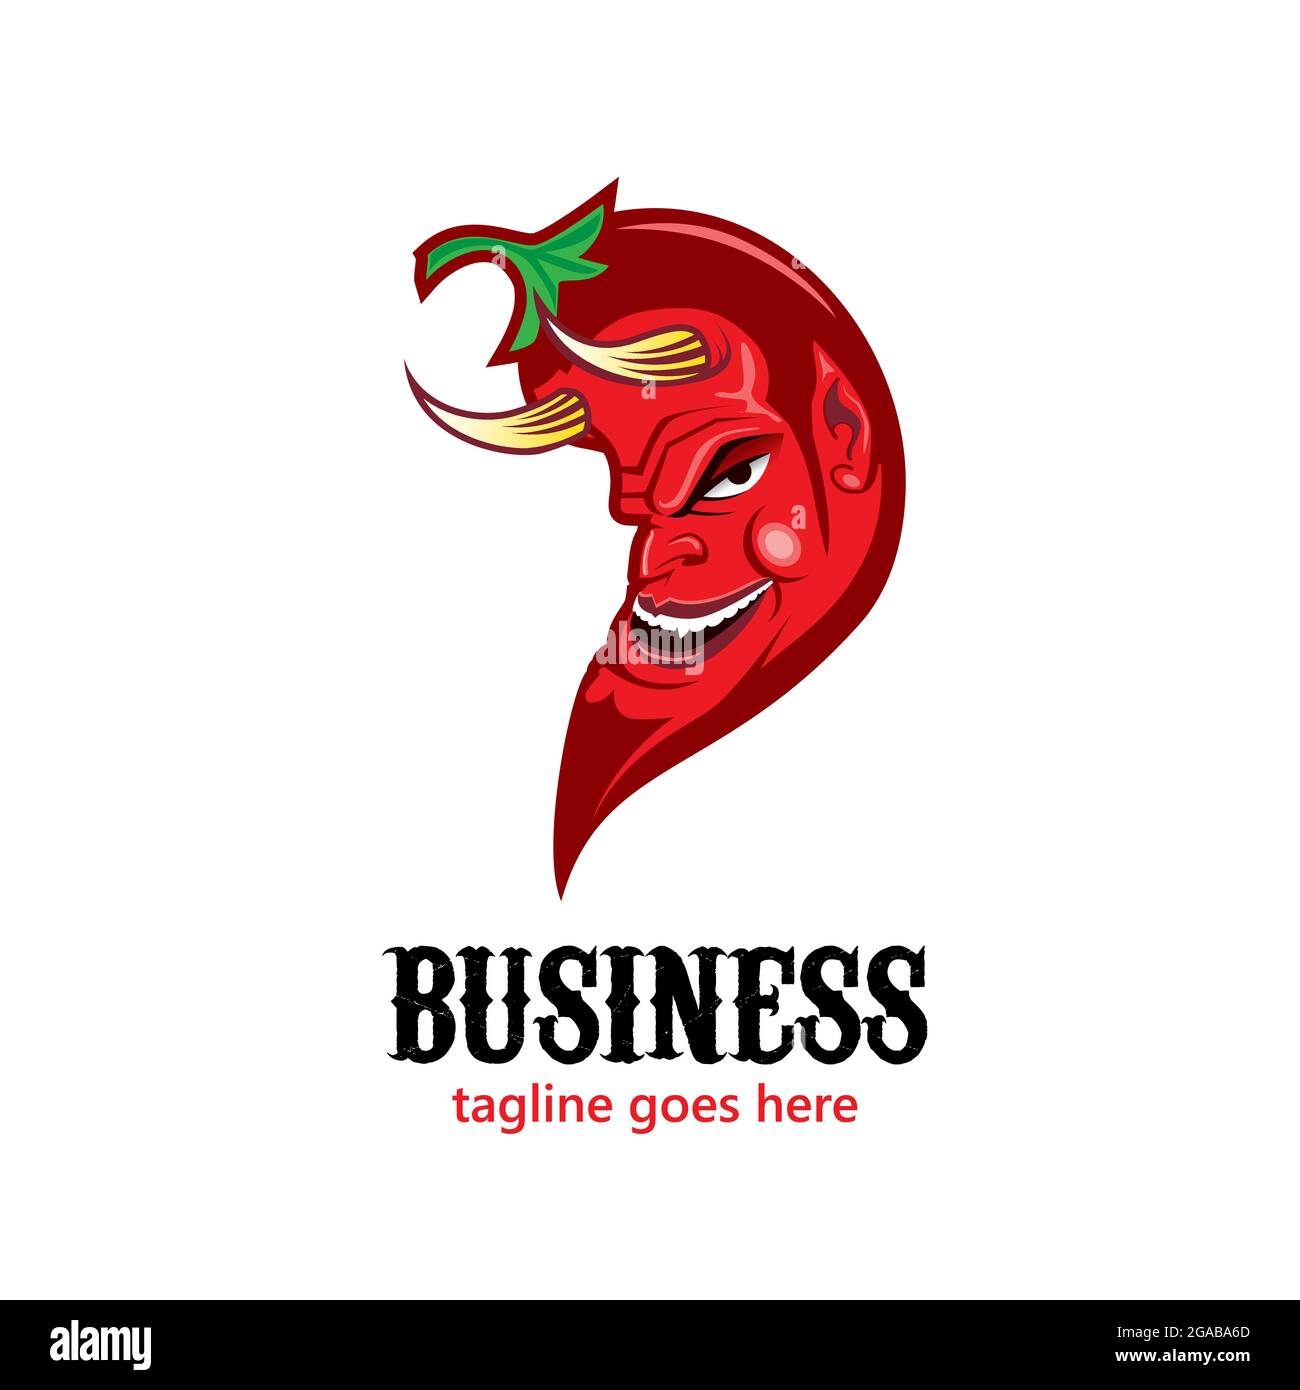 Red Devil Chili, illustration vectorielle de Chili mexicain Illustration de Vecteur